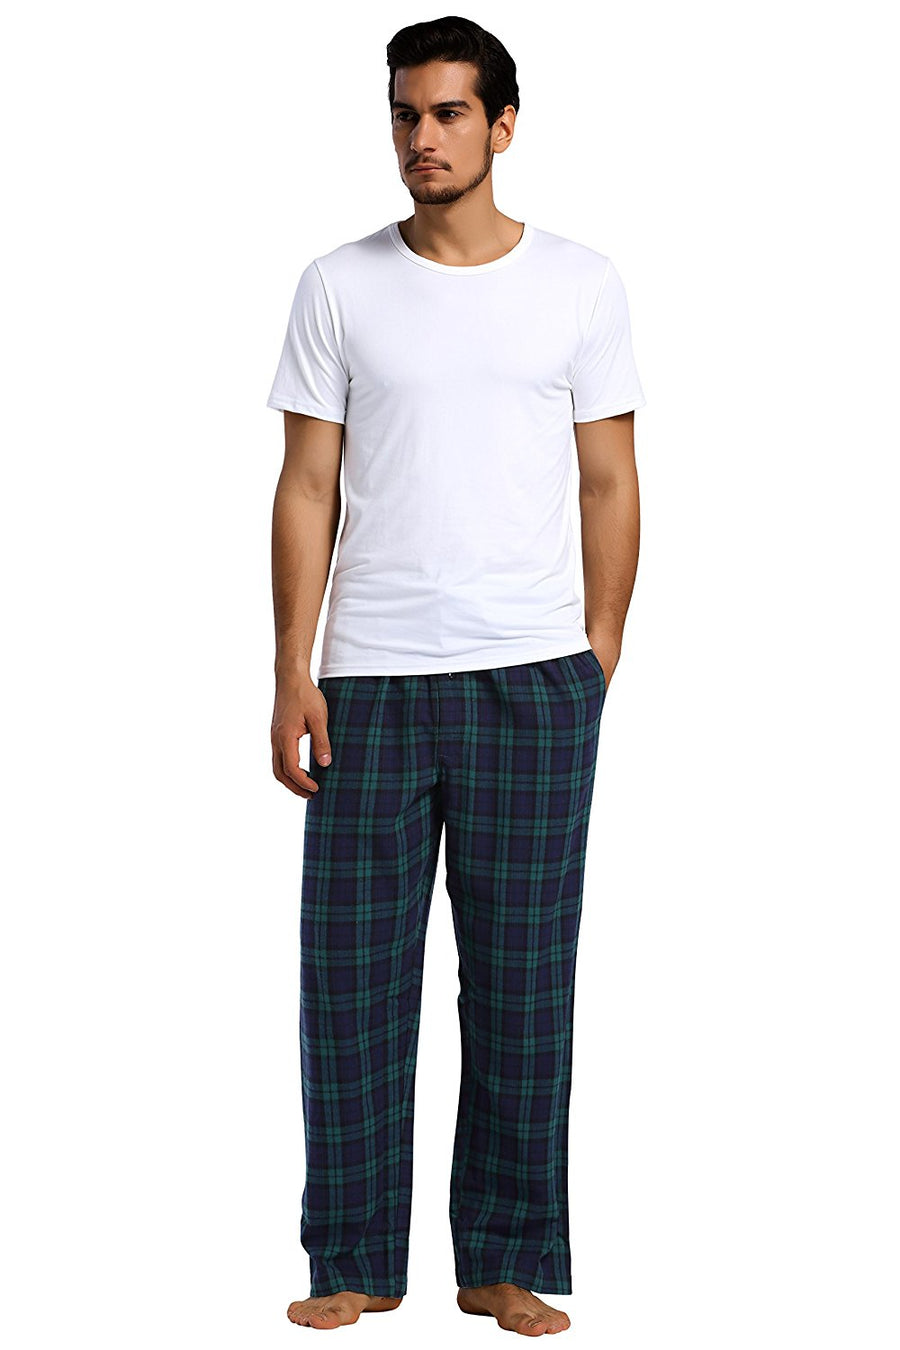 YUSHOW Mens Flannel Pajamas Set Cotton Plaid Pjs Button Down Warm